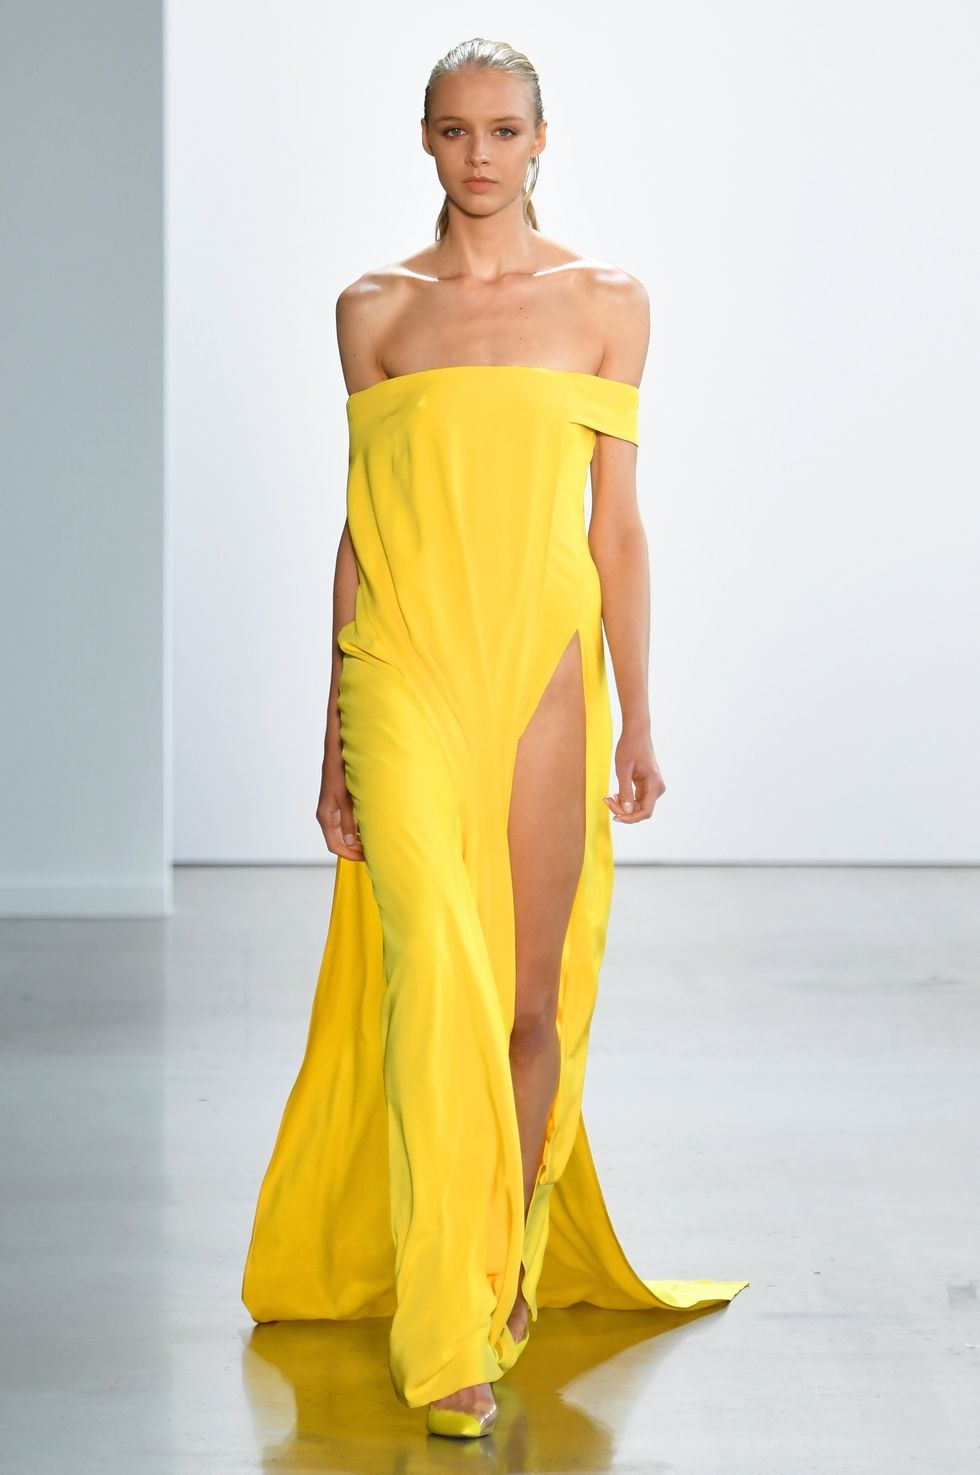  Mẫu váy màu vàng tươi với thiết kế tinh giản hoàn toàn về đường nét nhưng lại tôn dáng người mặc.